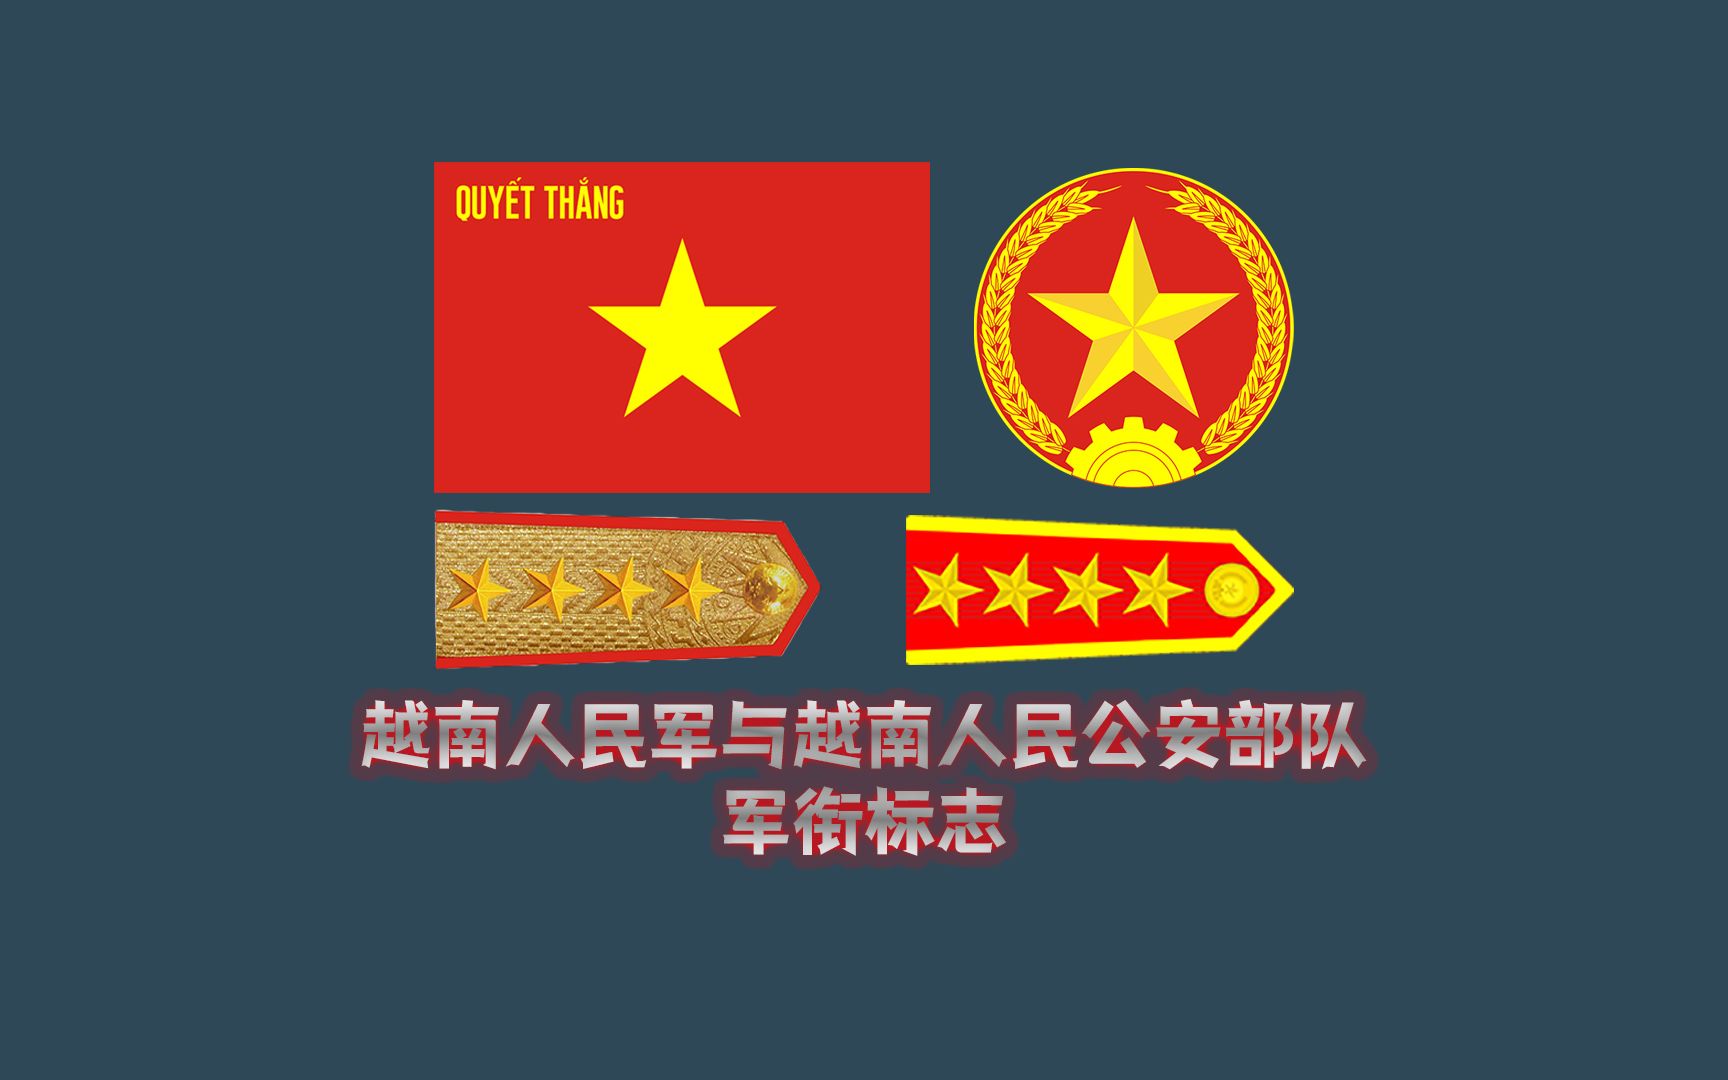 世界各国军衔标志:越南人民军与越南人民公安部队军衔标志